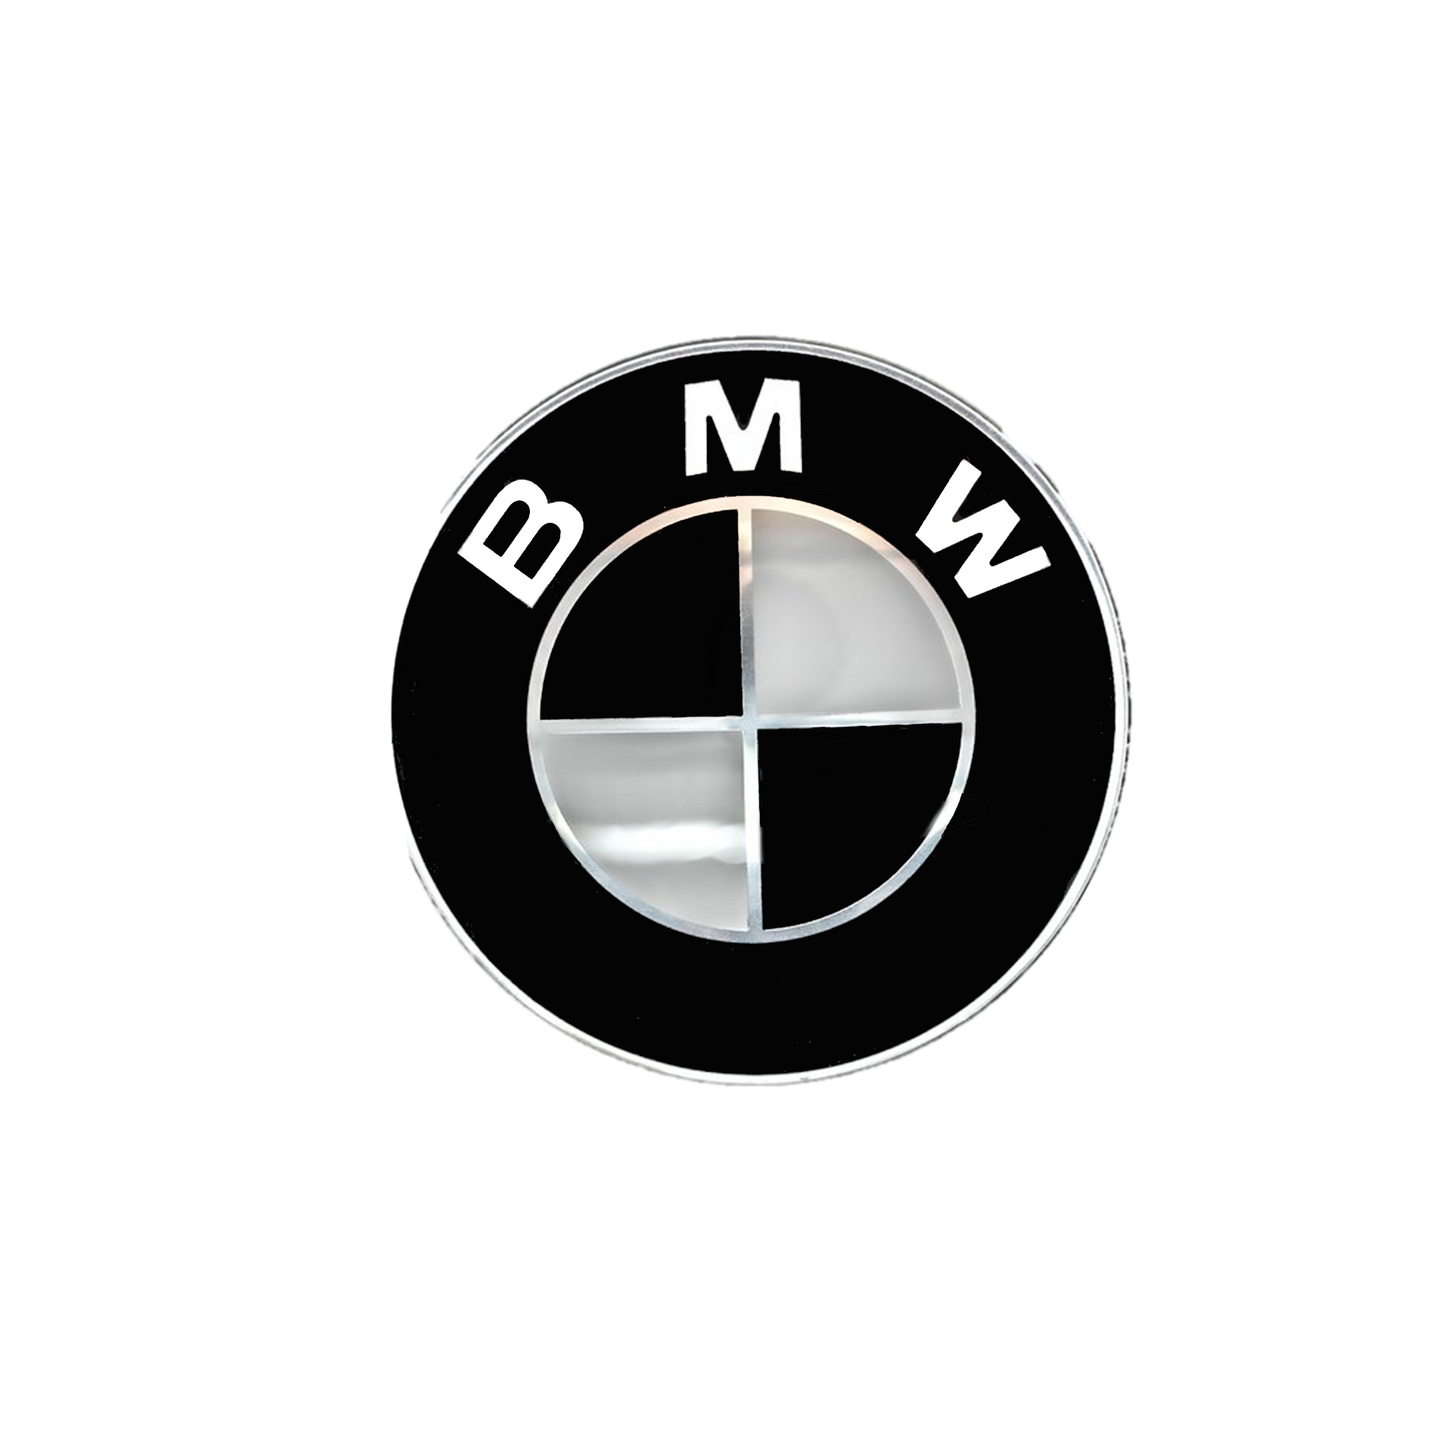 BMW Bag logo Sort & Hvid 70mm